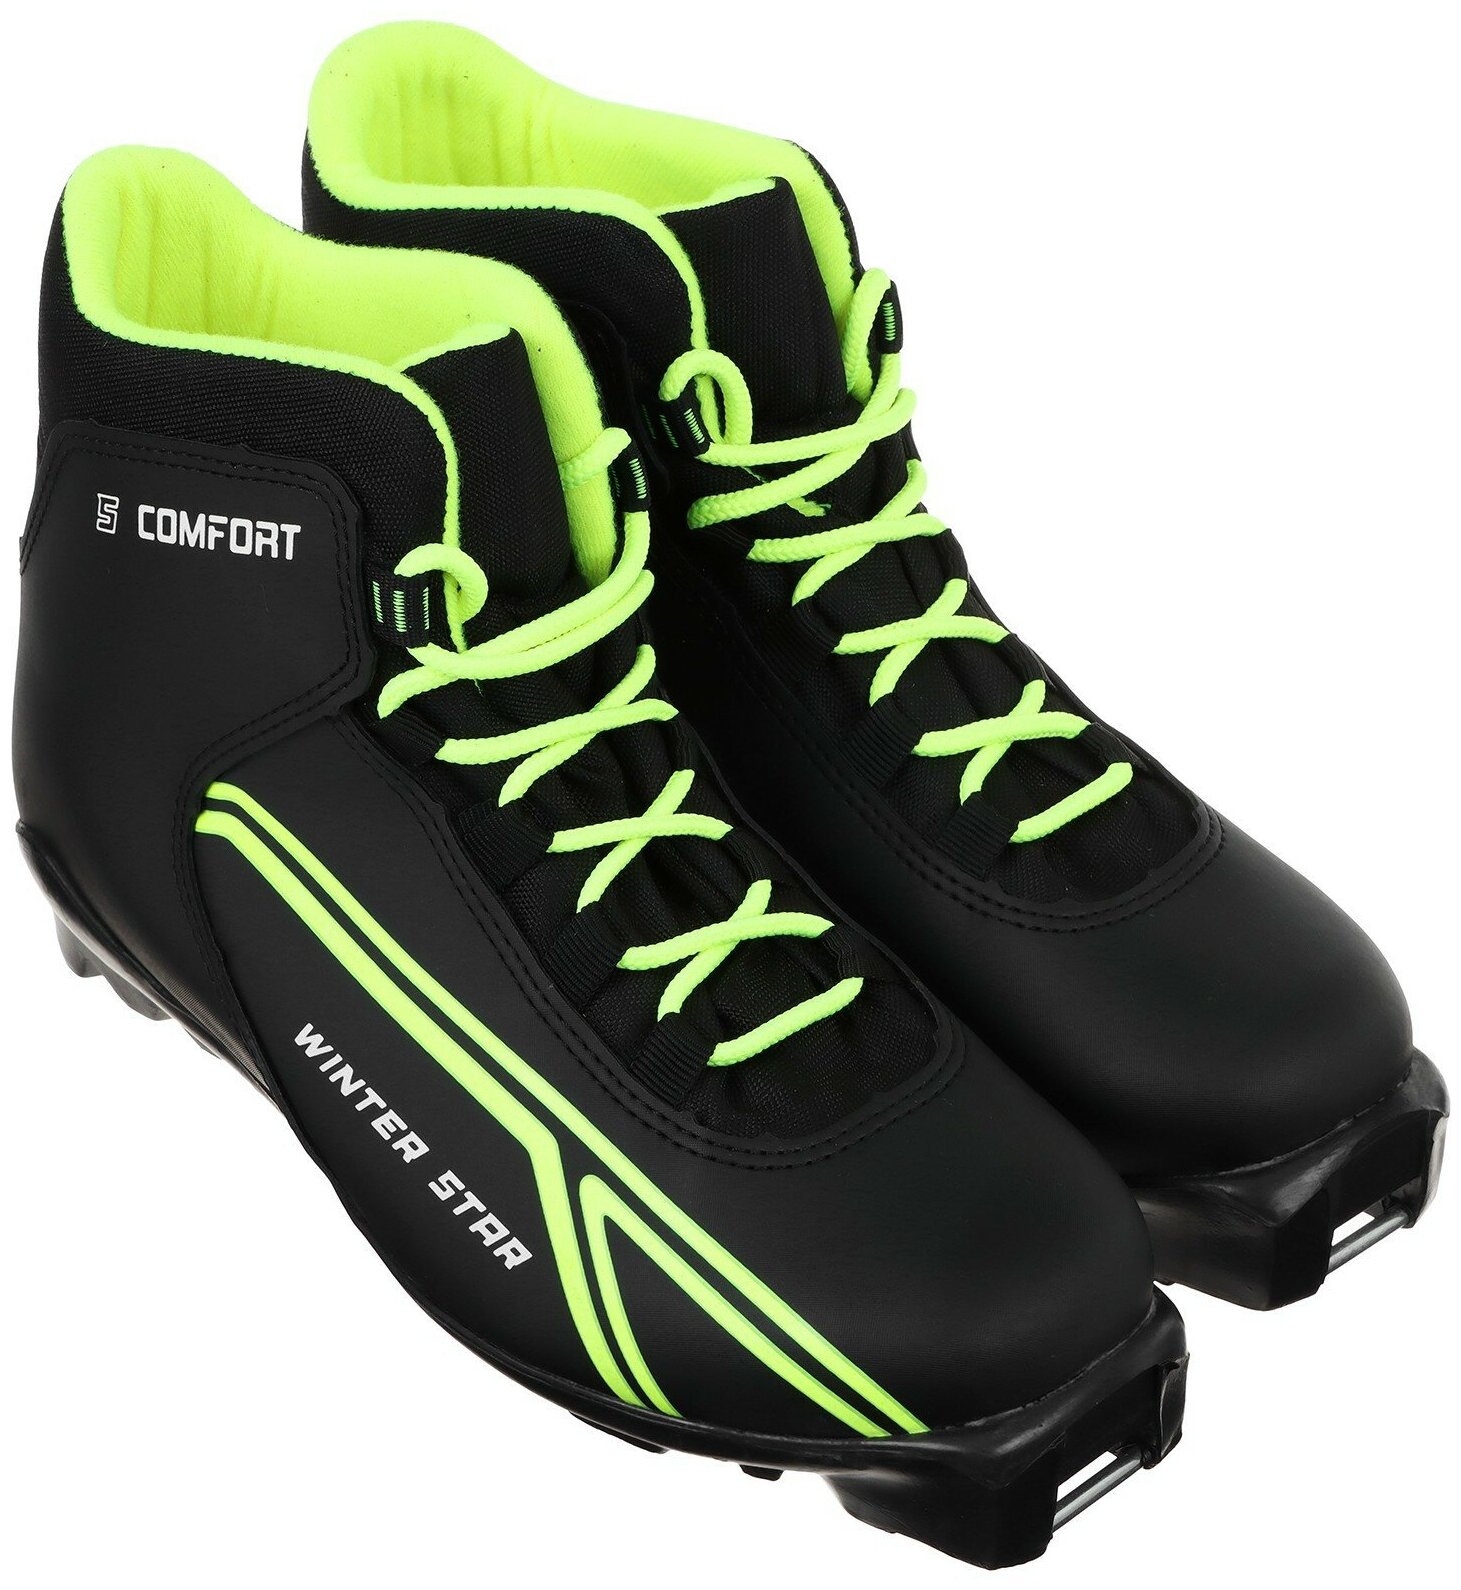 Ботинки лыжные Winter Star "Сomfort", SNS, искусственная кожа, размер 38, цвет чёрный, лайм-неон